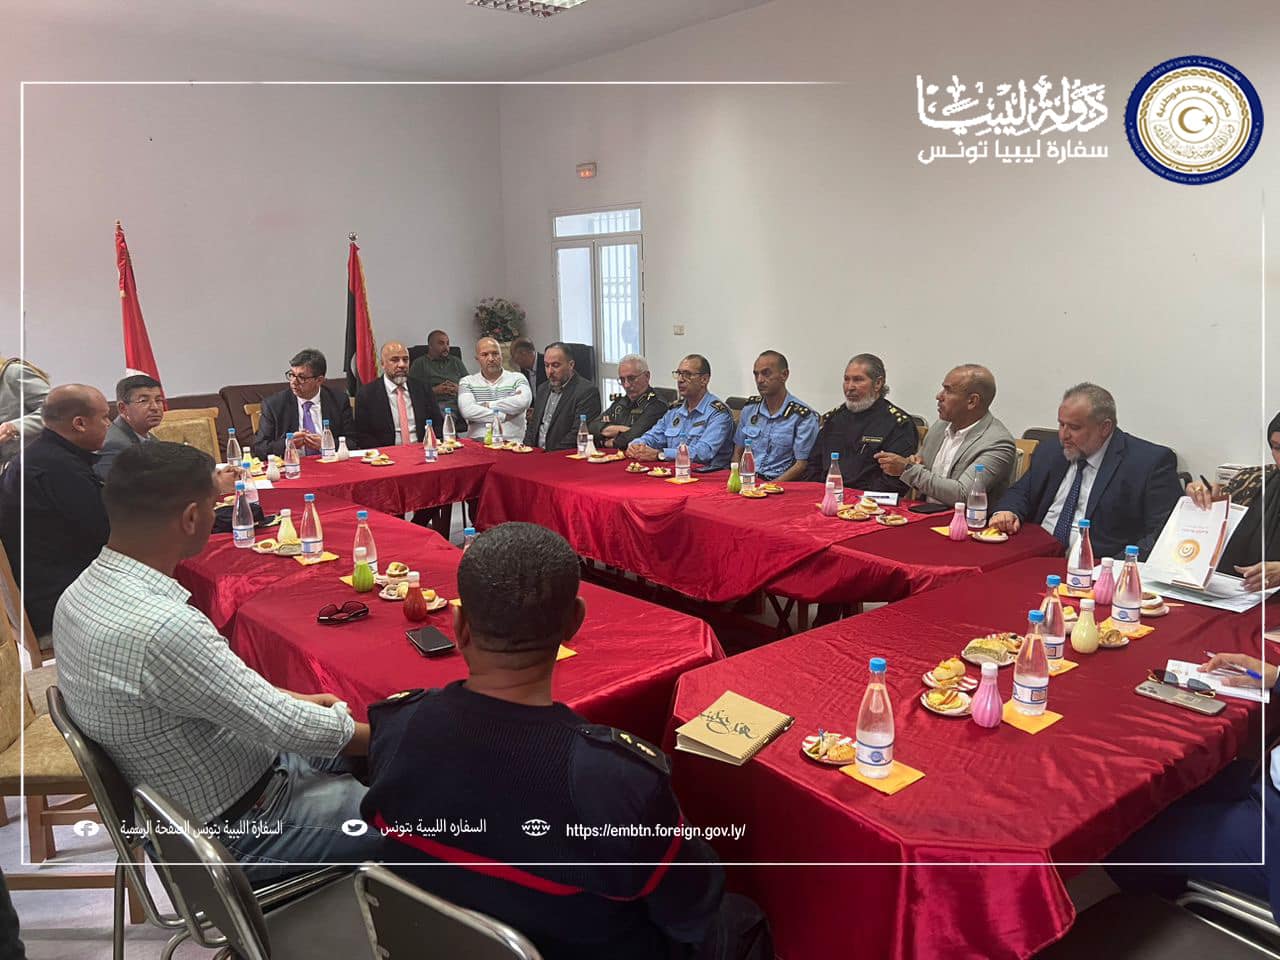 سفارة ليبيا في تونس : اجتماع امني ليبي تونسي لبحث آخر الاستعدادات لافتتاح معبر راس اجدير.